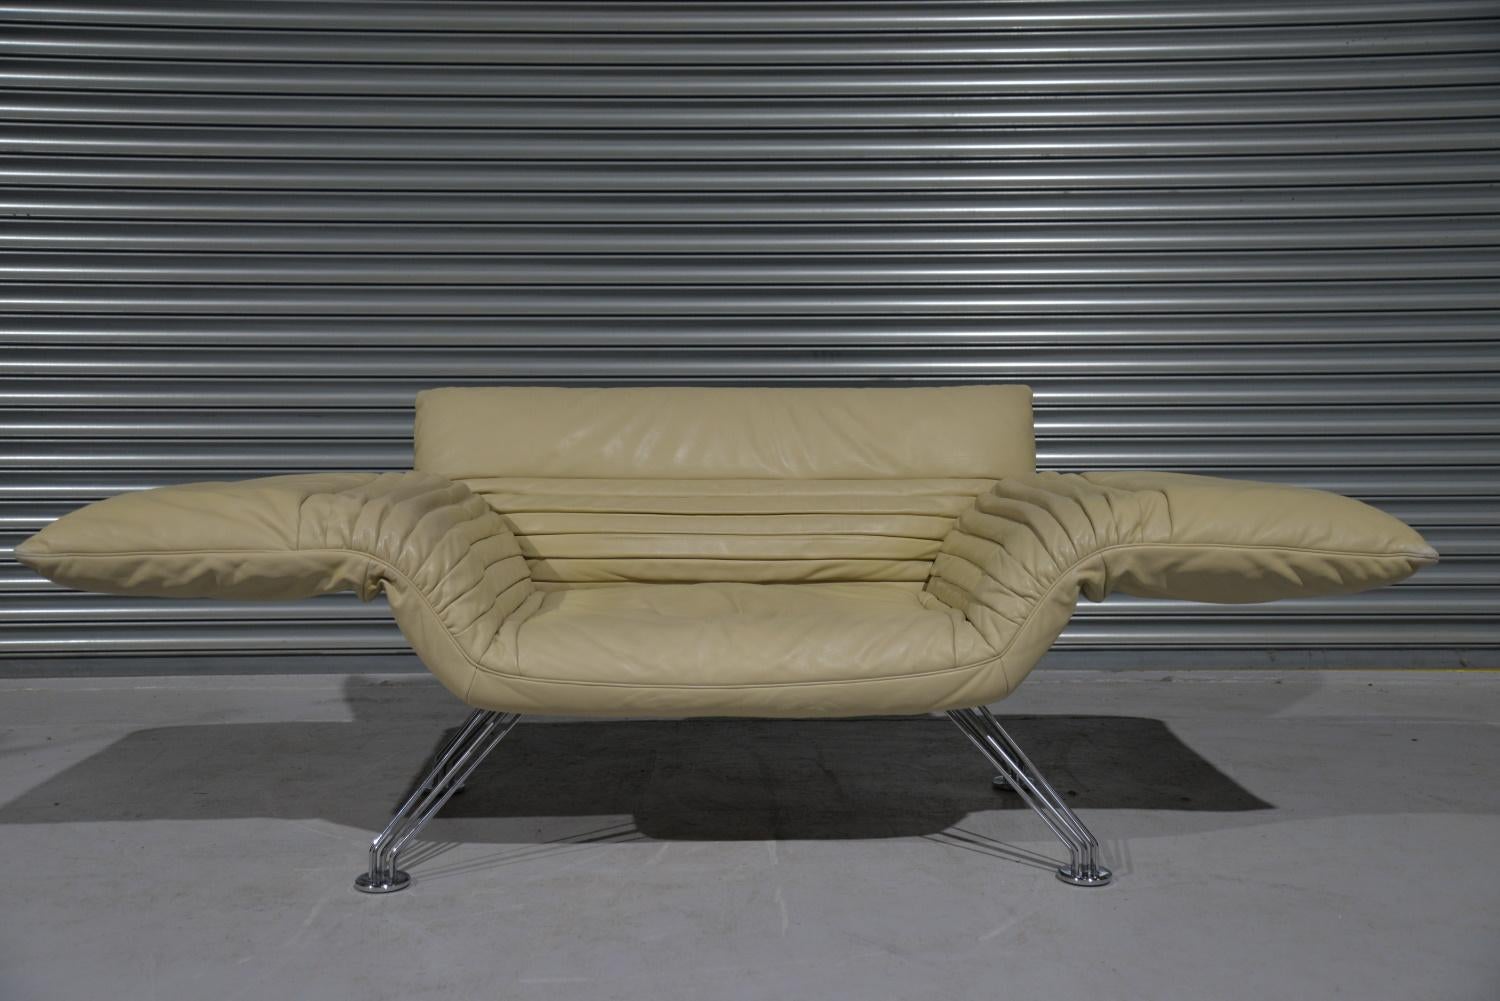 Leather Vintage De Sede Ds 142 Sofa / Chaise Longue by Winfried Totzek, Switzerland 1988 For Sale